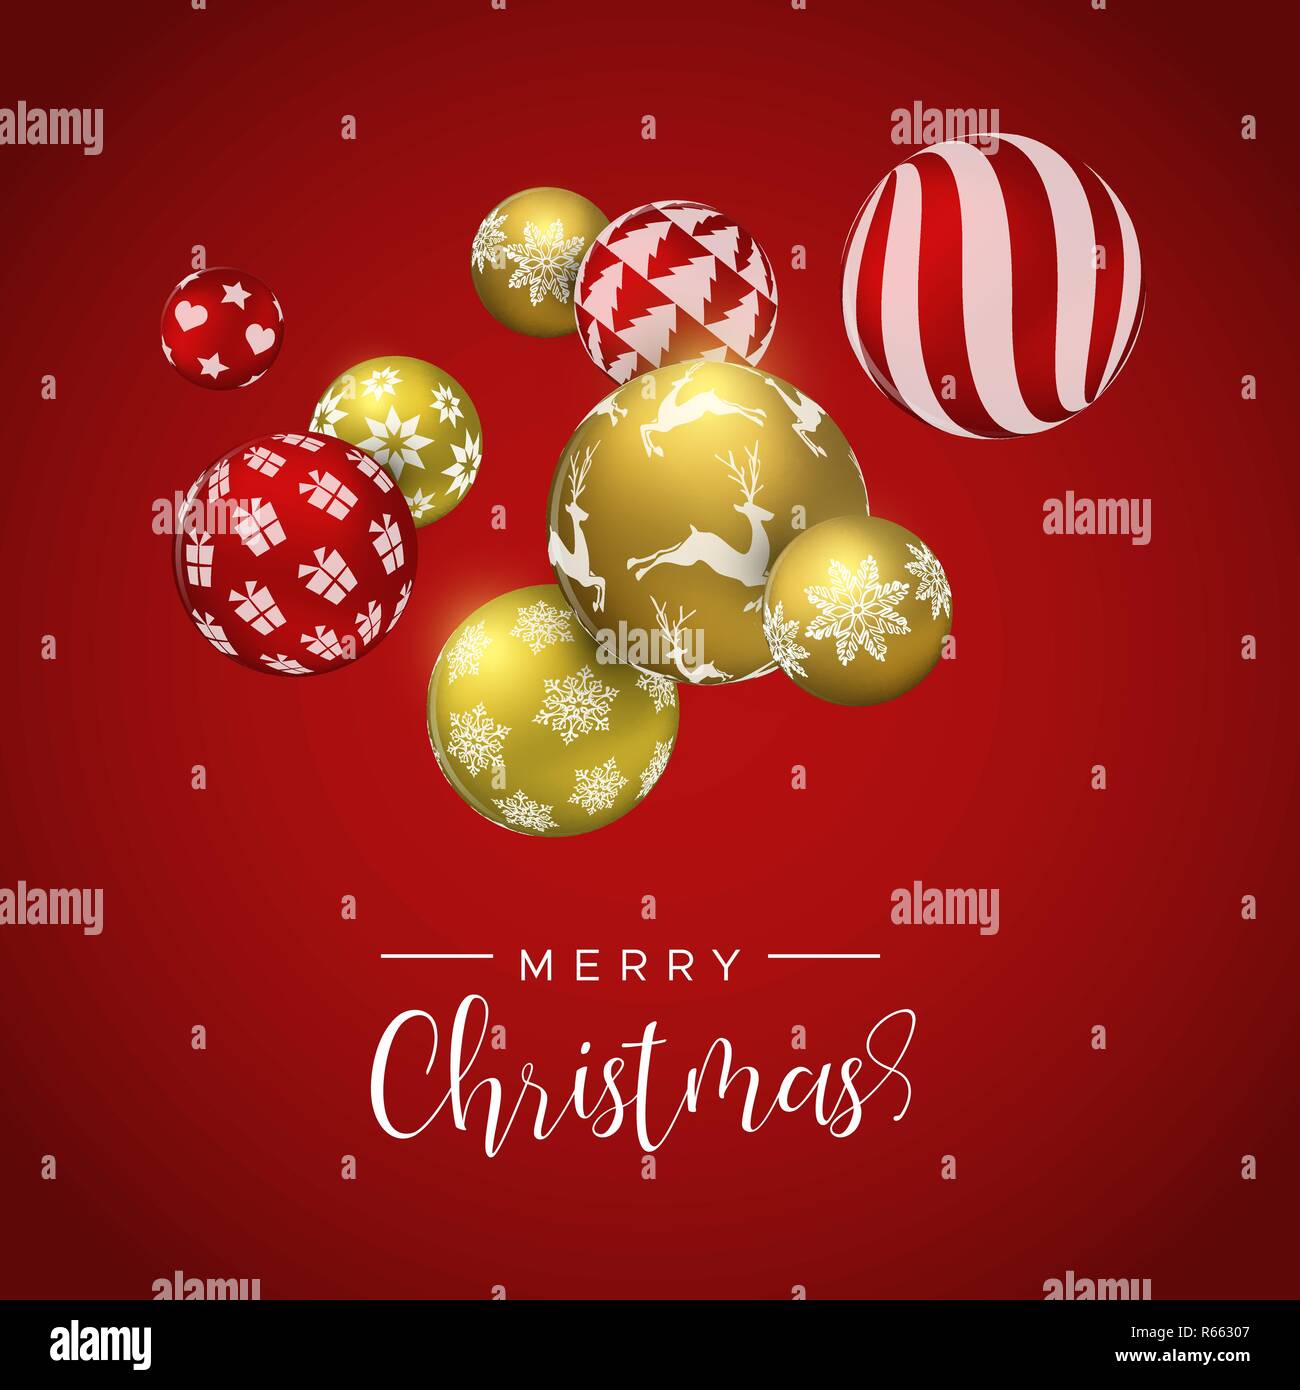 Merry Christmas Card, Gold und Rot xmas bauble Ornamente. Luxus Urlaub Kugeln Hintergrund für die Einladung oder Jahreszeiten Gruß. Stock Vektor